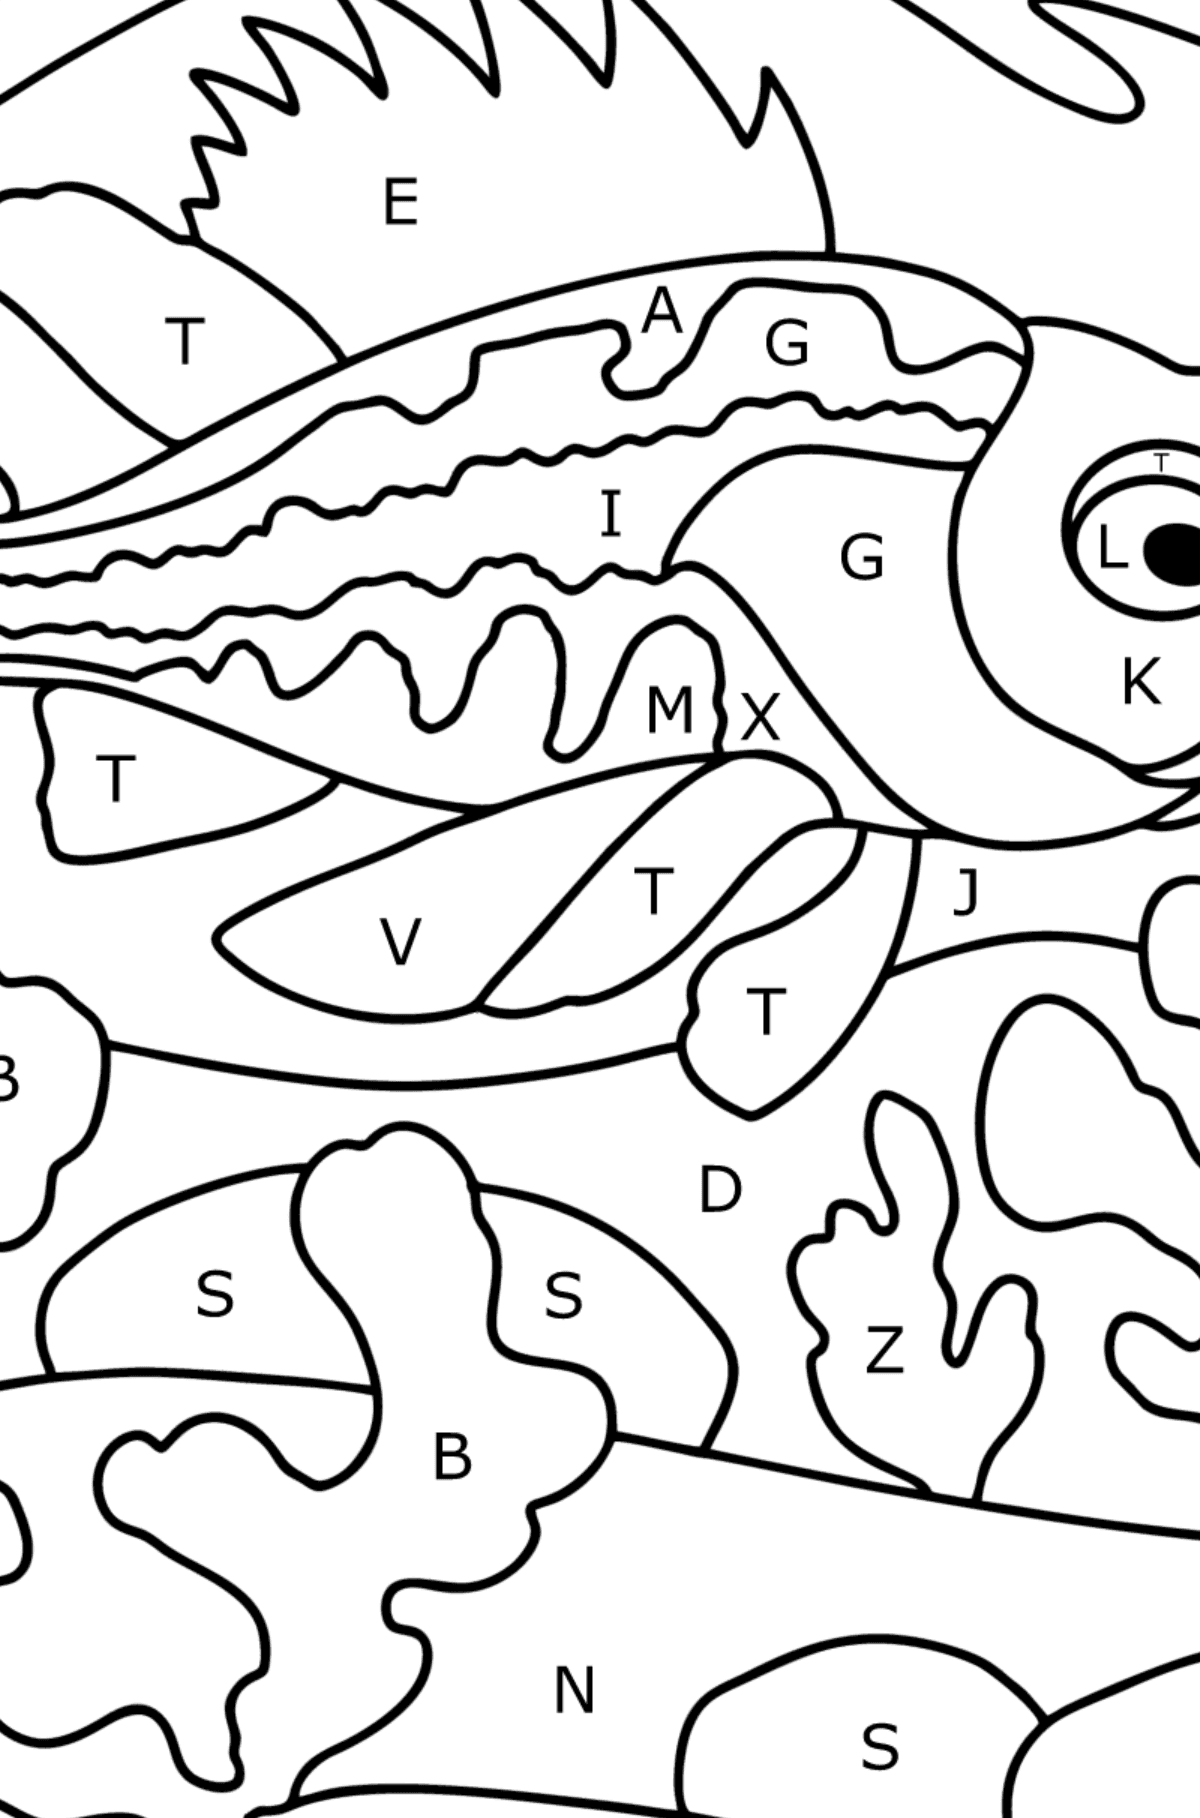 Coloriage Loup de mer - Coloriage par Lettres pour les Enfants